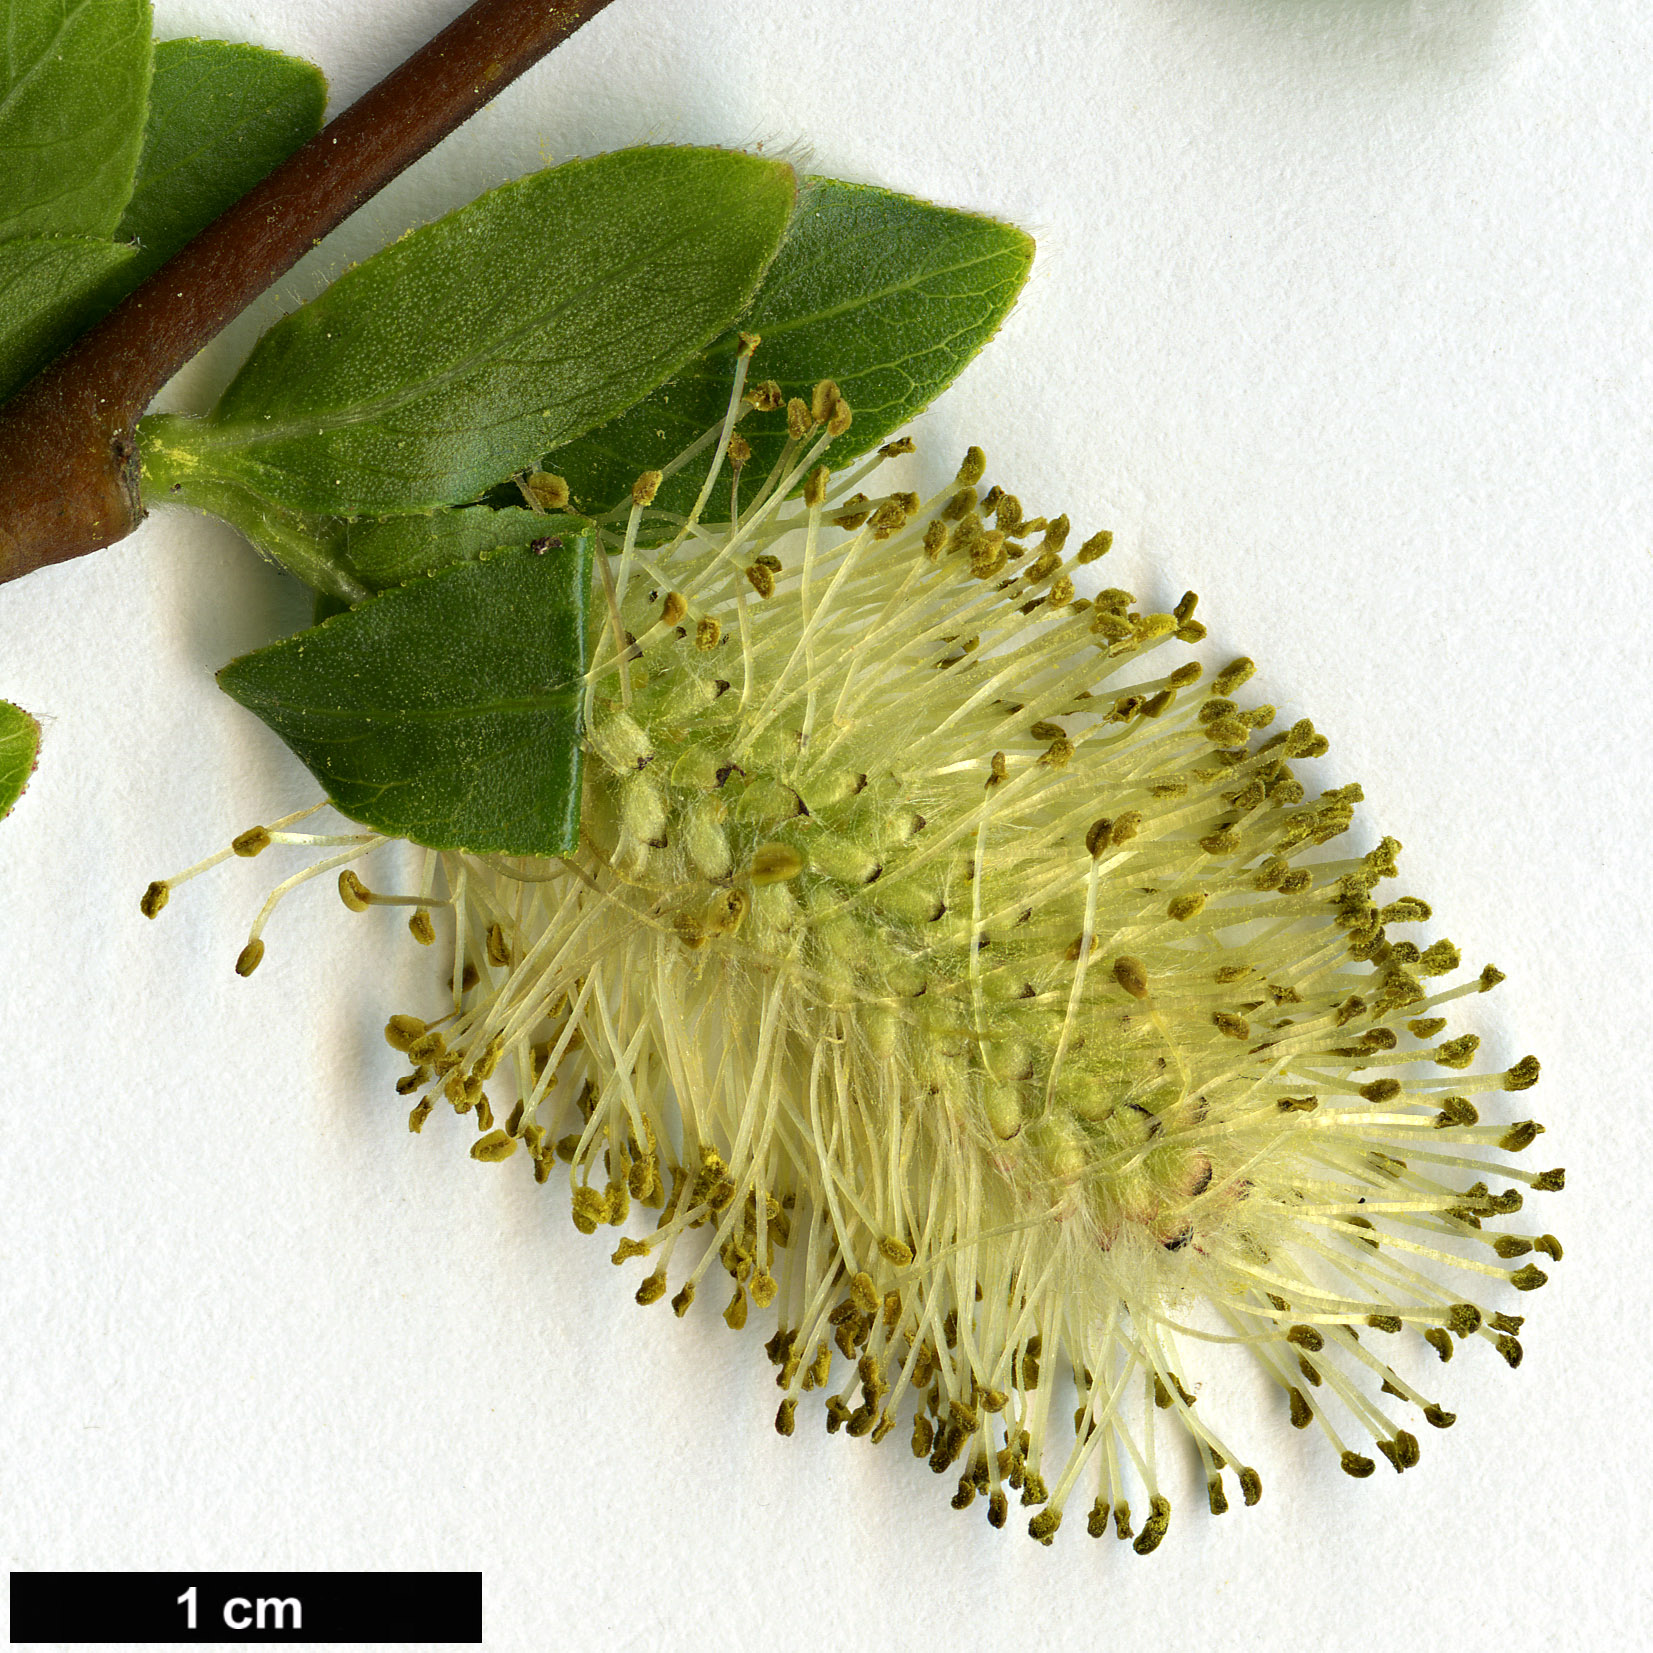 High resolution image: Family: Salicaceae - Genus: Salix - Taxon: mielichhoferi